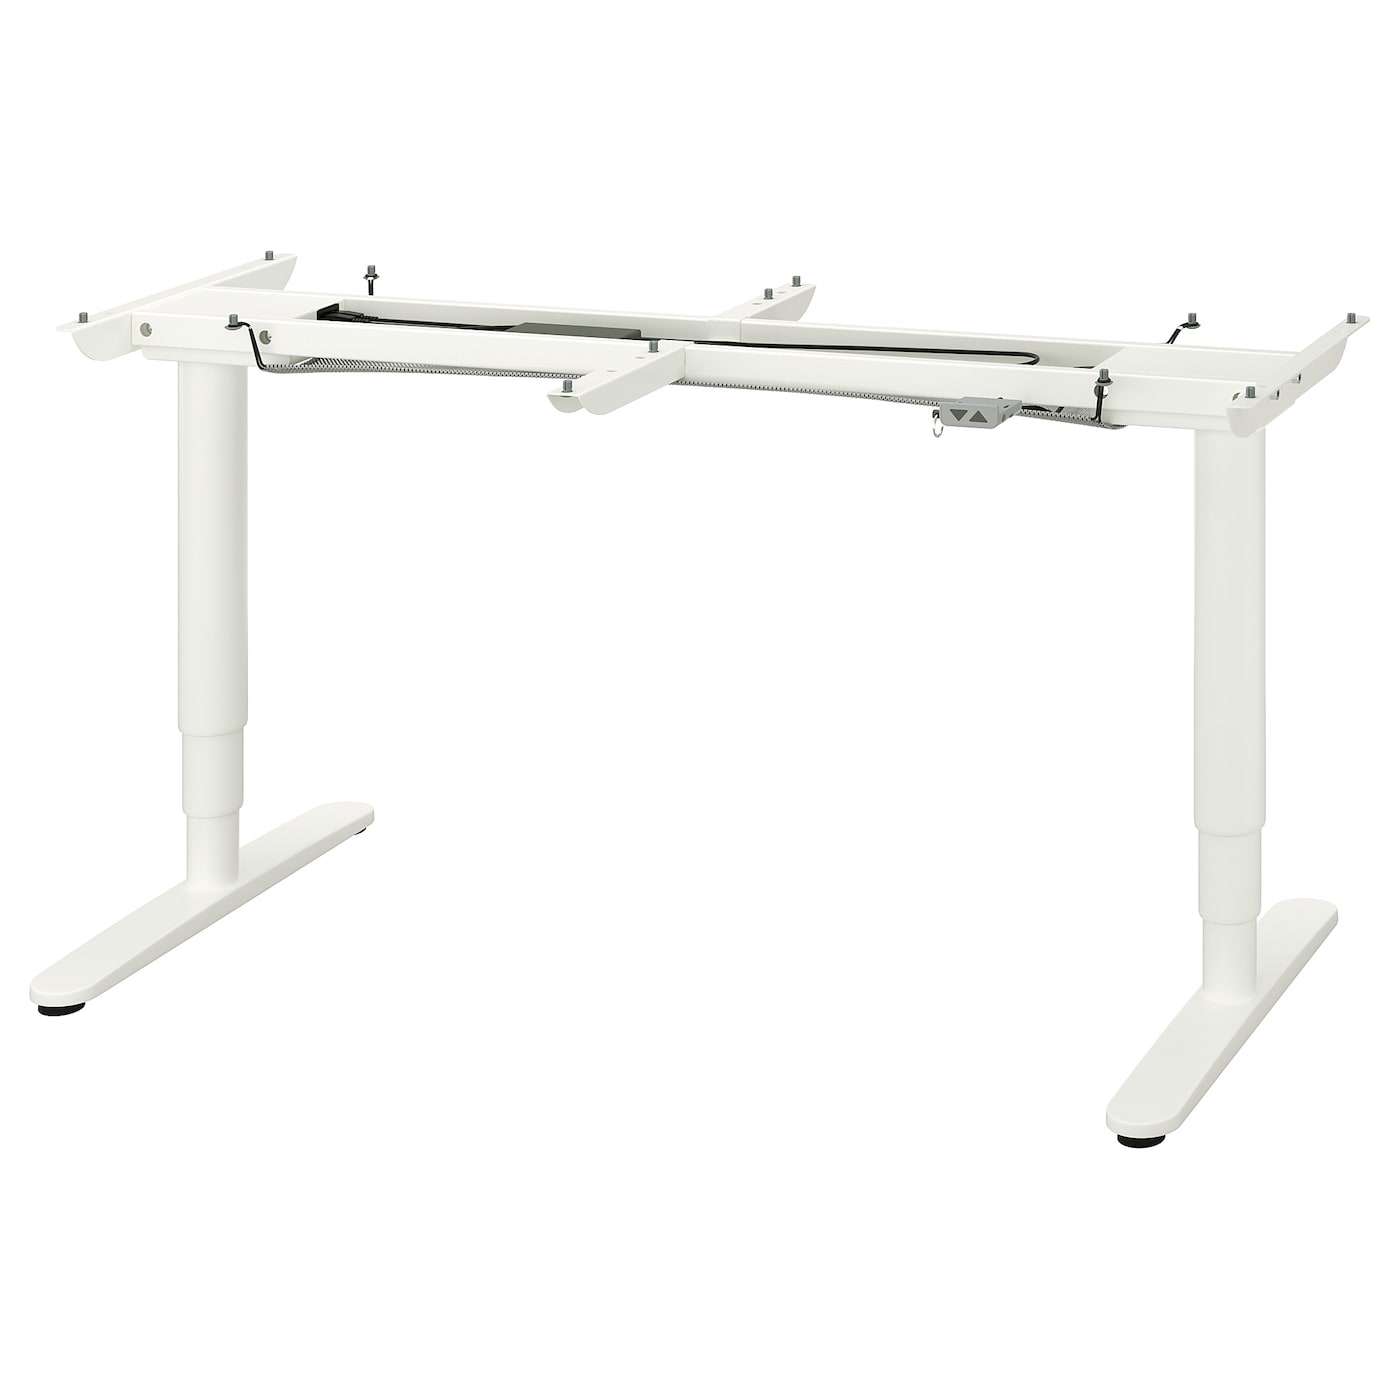 Основание для сидения/стойки - IKEA BEKANT, 160x80см, белый, БЕКАНТ ИКЕА